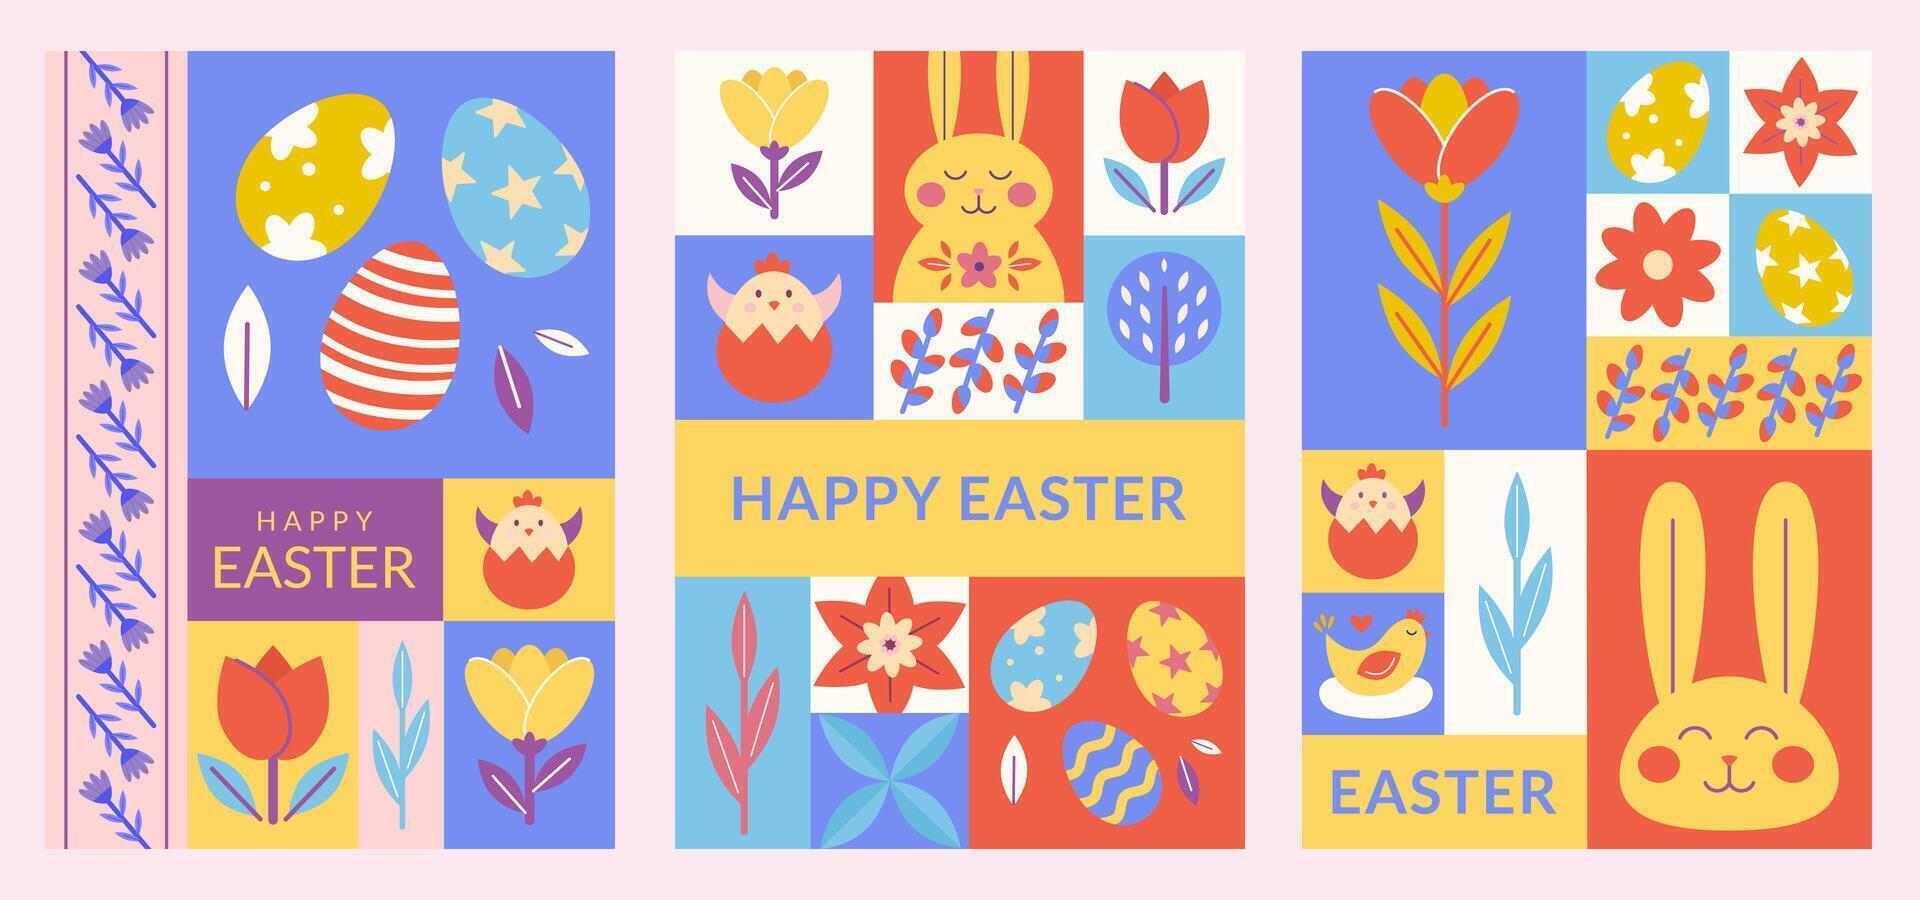 Pascua de Resurrección fiesta vertical póster conjunto en geométrico minimalista diseño vector